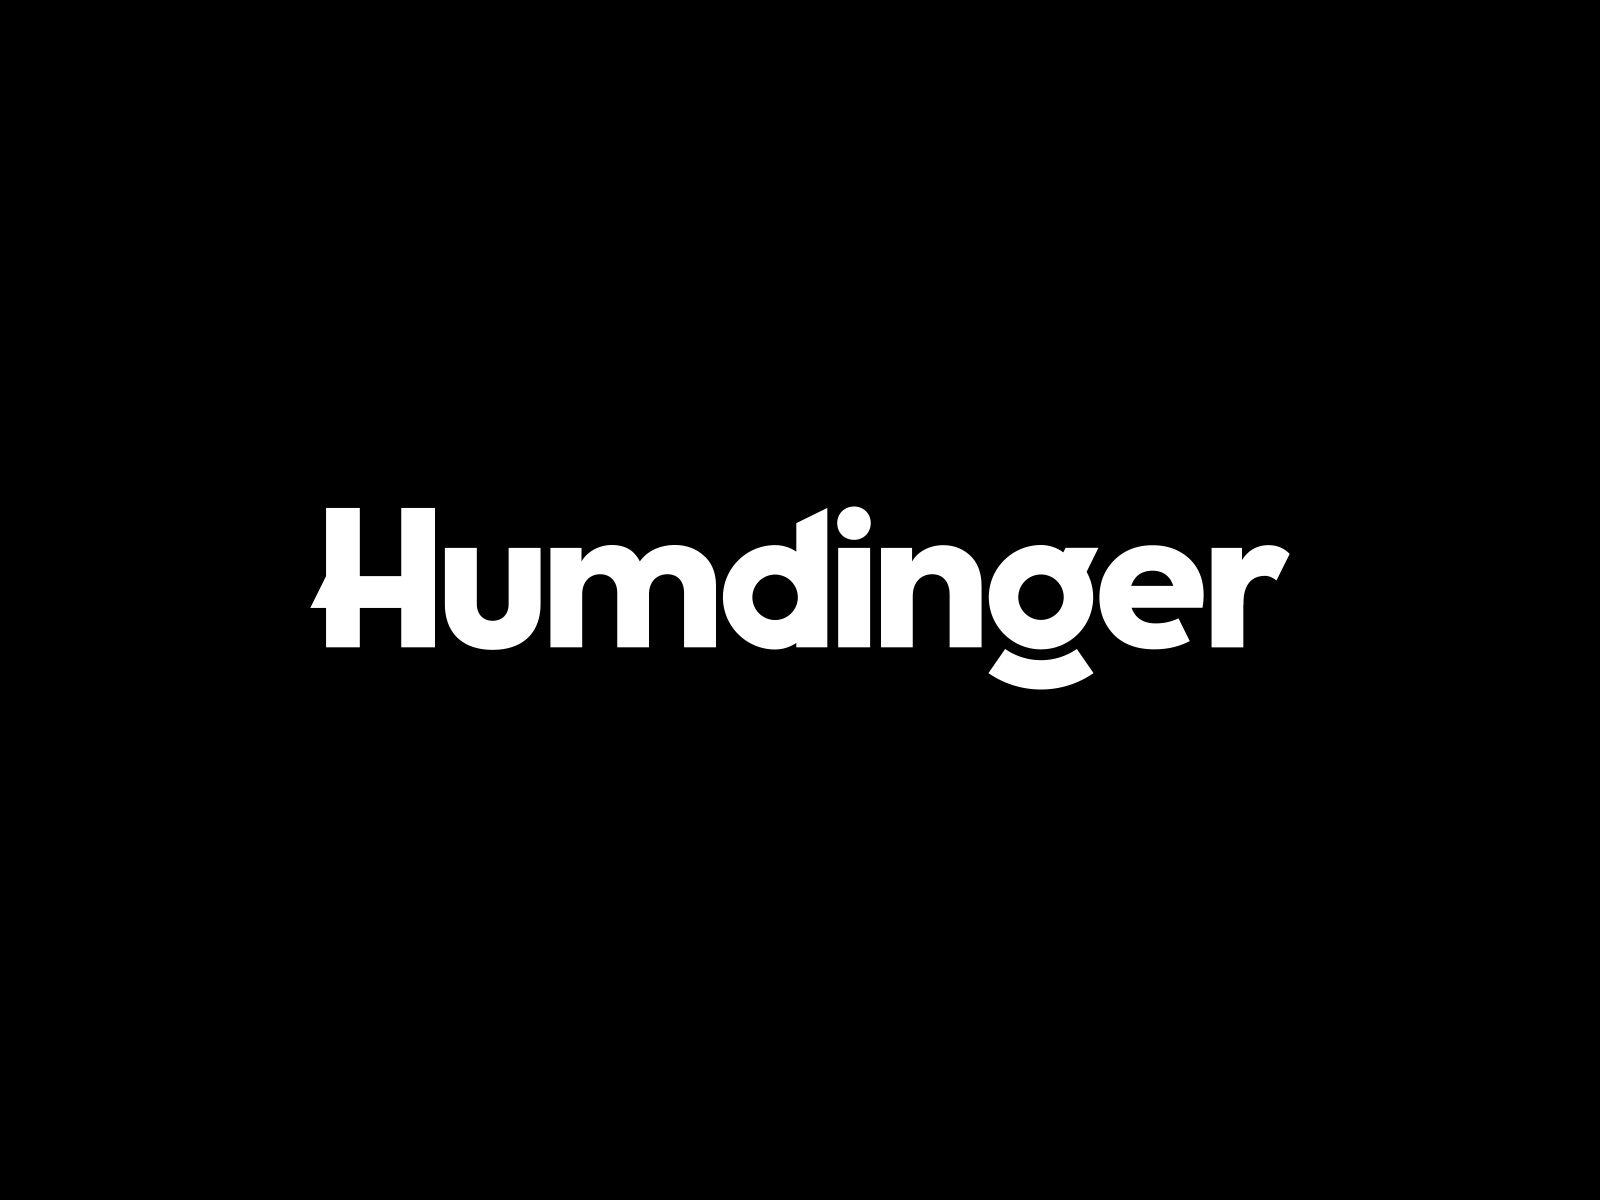 The New Humdinger